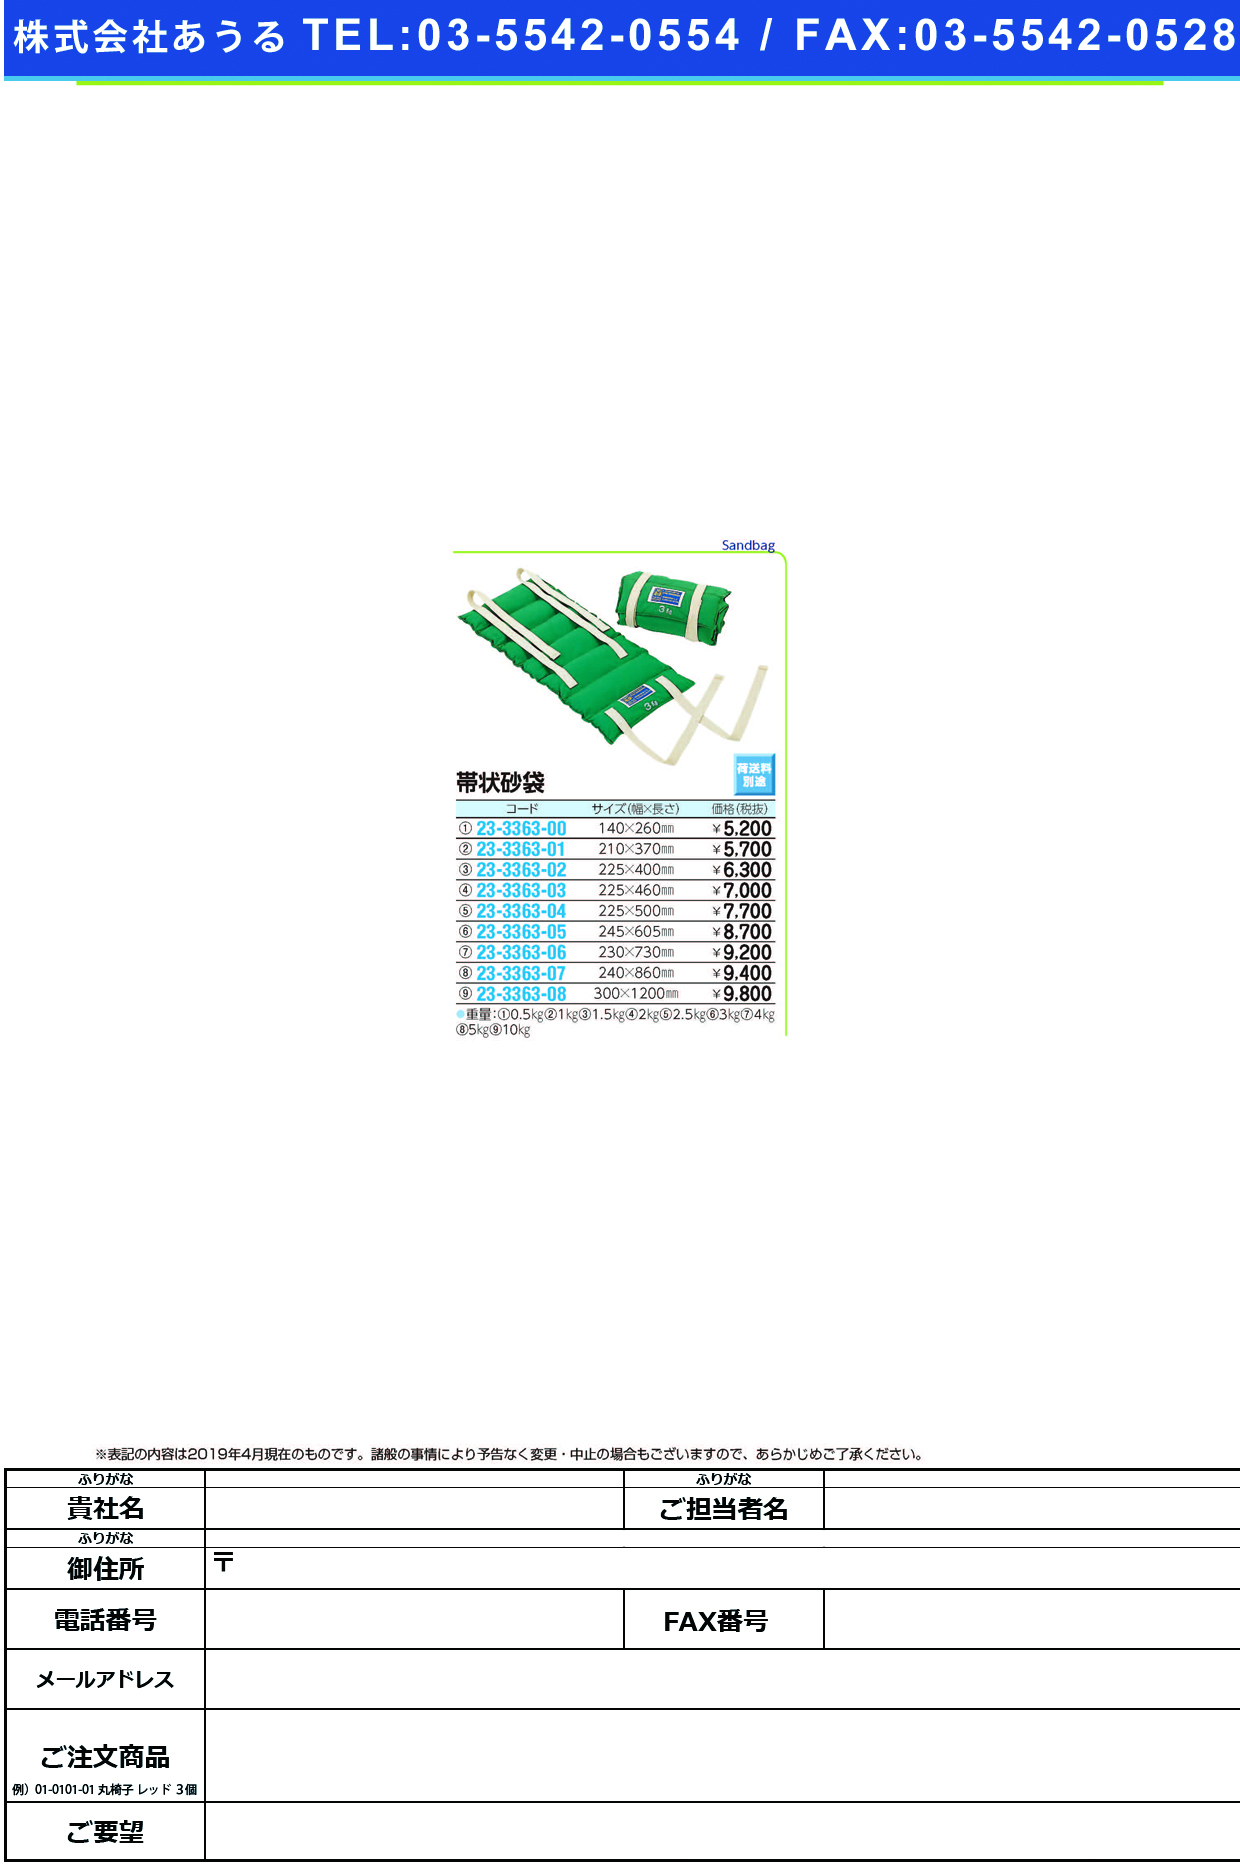 (23-3363-01)帯状砂袋 R-526(1.0KG) ｵﾋﾞｼﾞｮｳｽﾅﾌﾞｸﾛ【1個単位】【2019年カタログ商品】